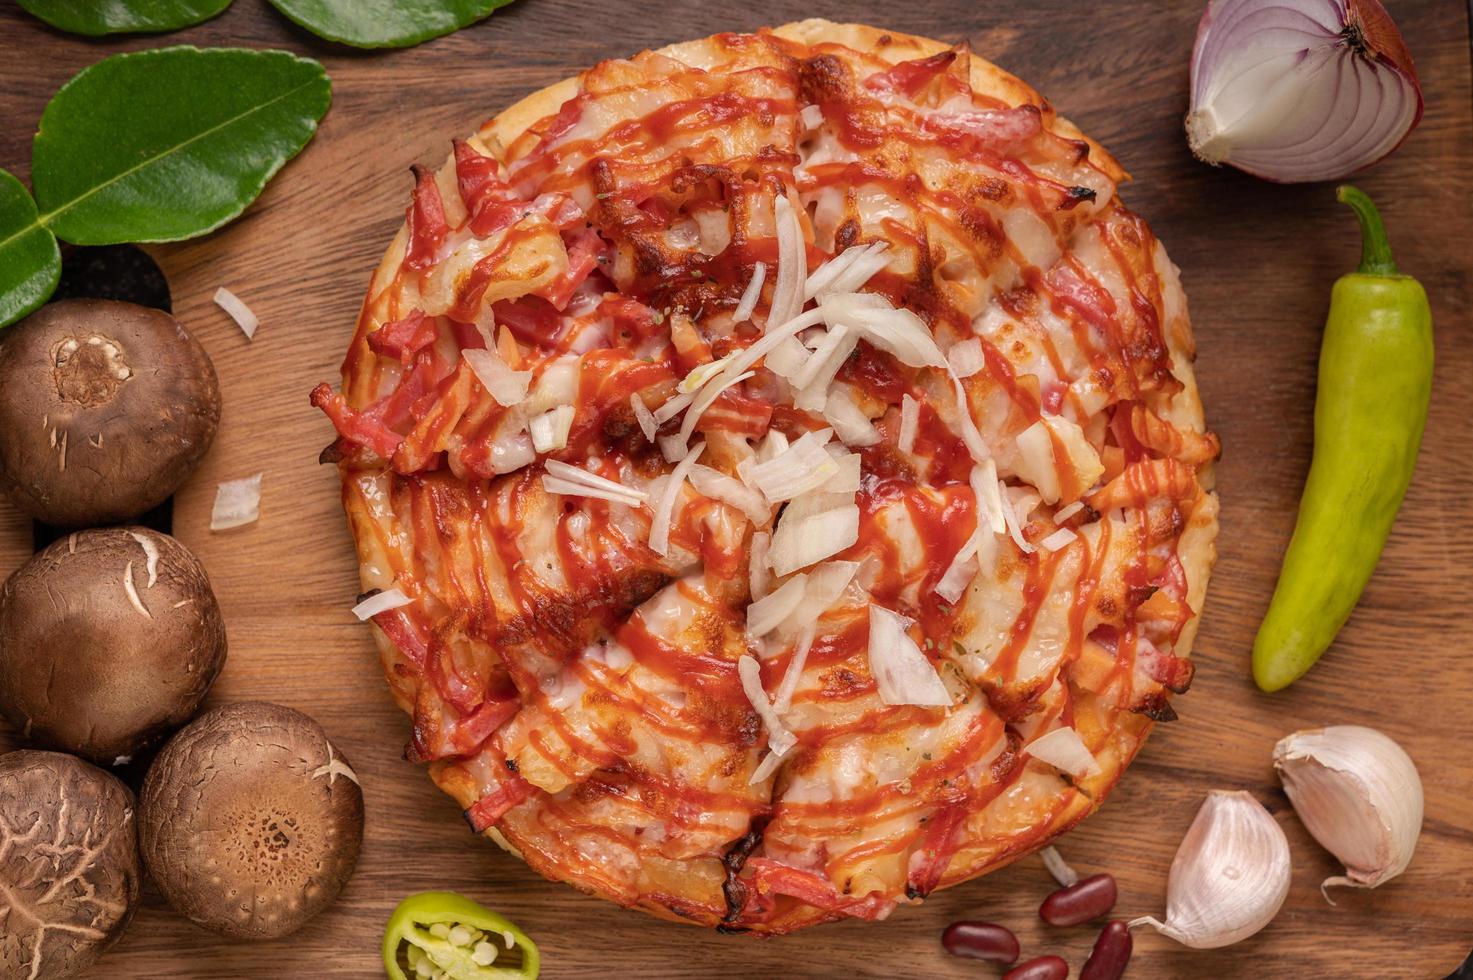 pizza en una tabla de madera con pimientos, ajo, chile y setas shiitake foto